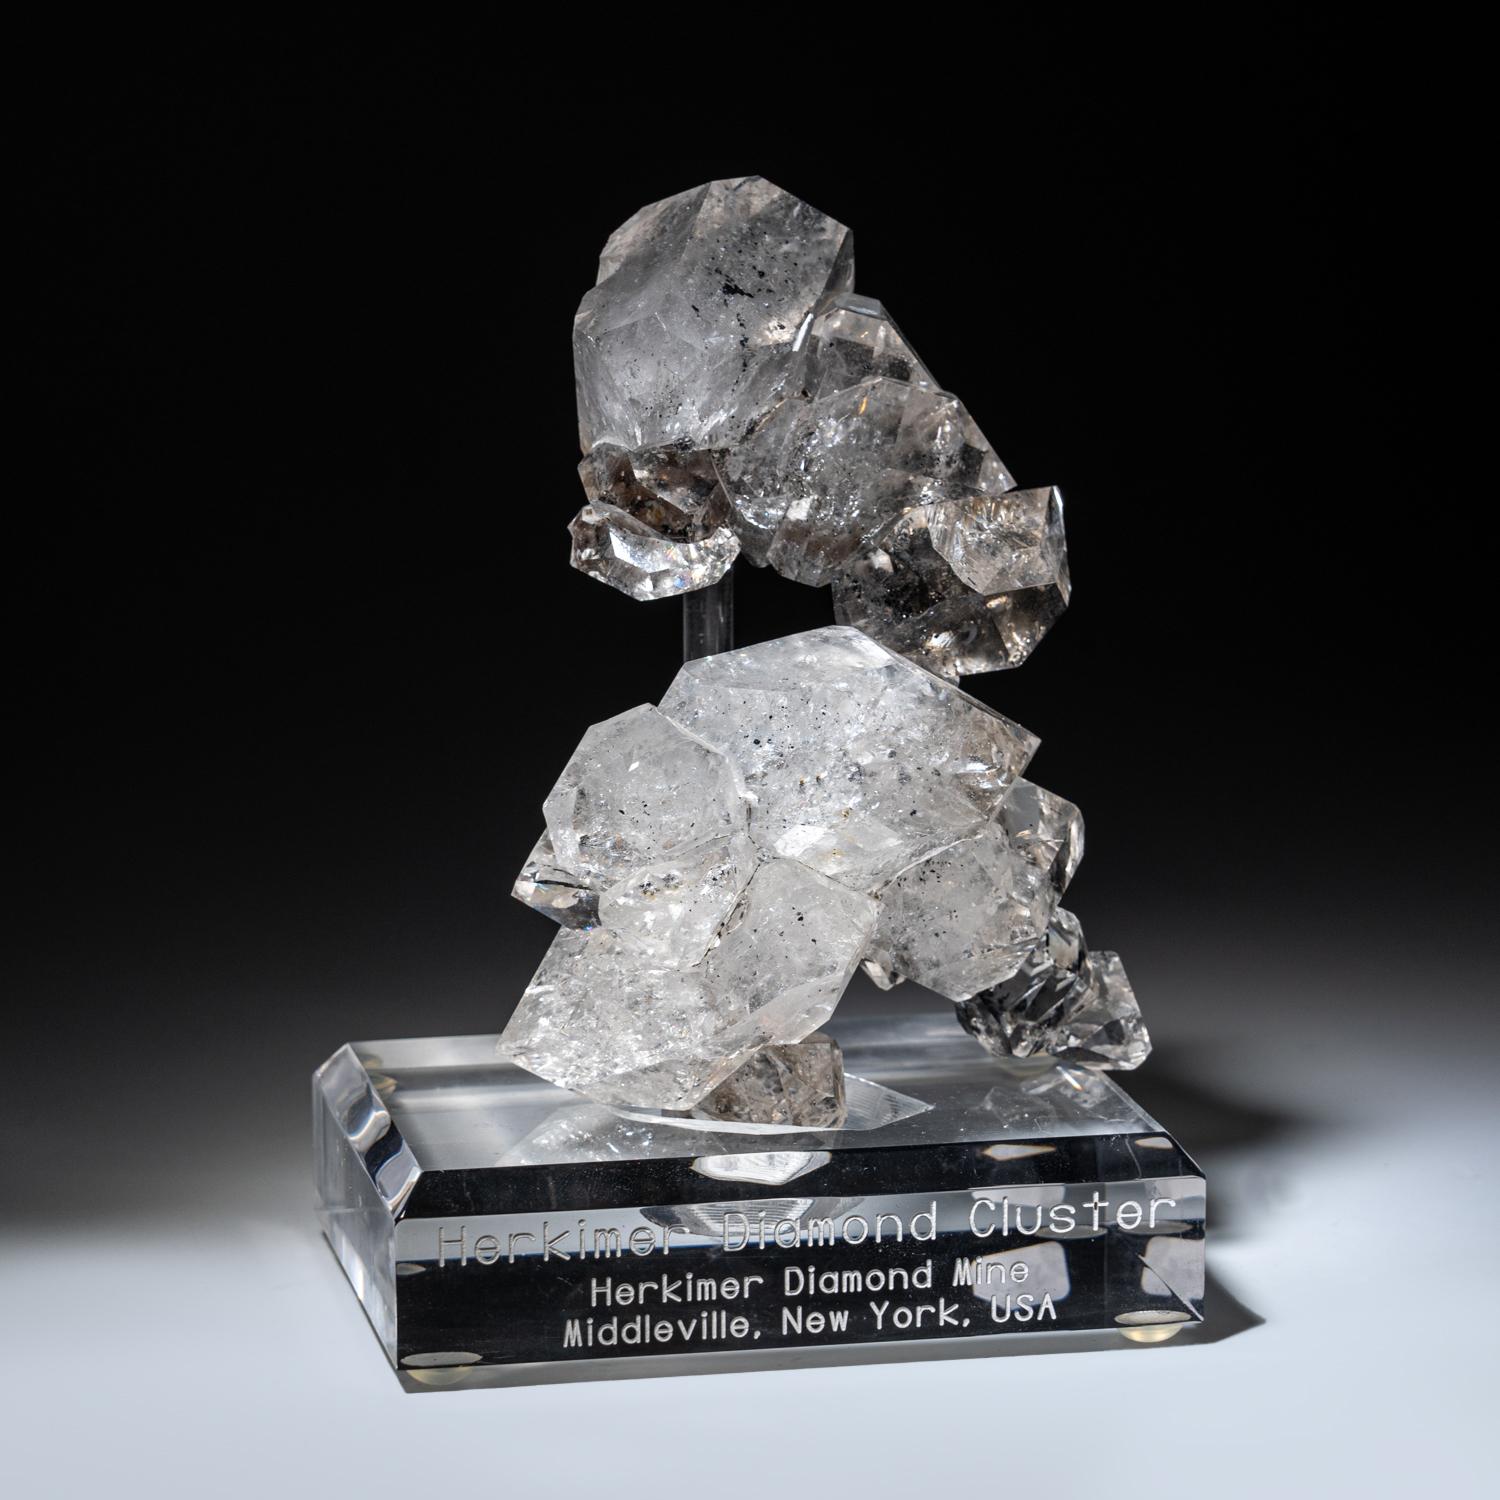 Amas de cristaux de quartz de Herkimer à double terminaison, empilés, provenant du comté de Herkimer, New York. Ce spécimen esthétique, translucide à transparent, en forme d'amas de diamants de 3d, est en parfait état. Cette pièce présente une